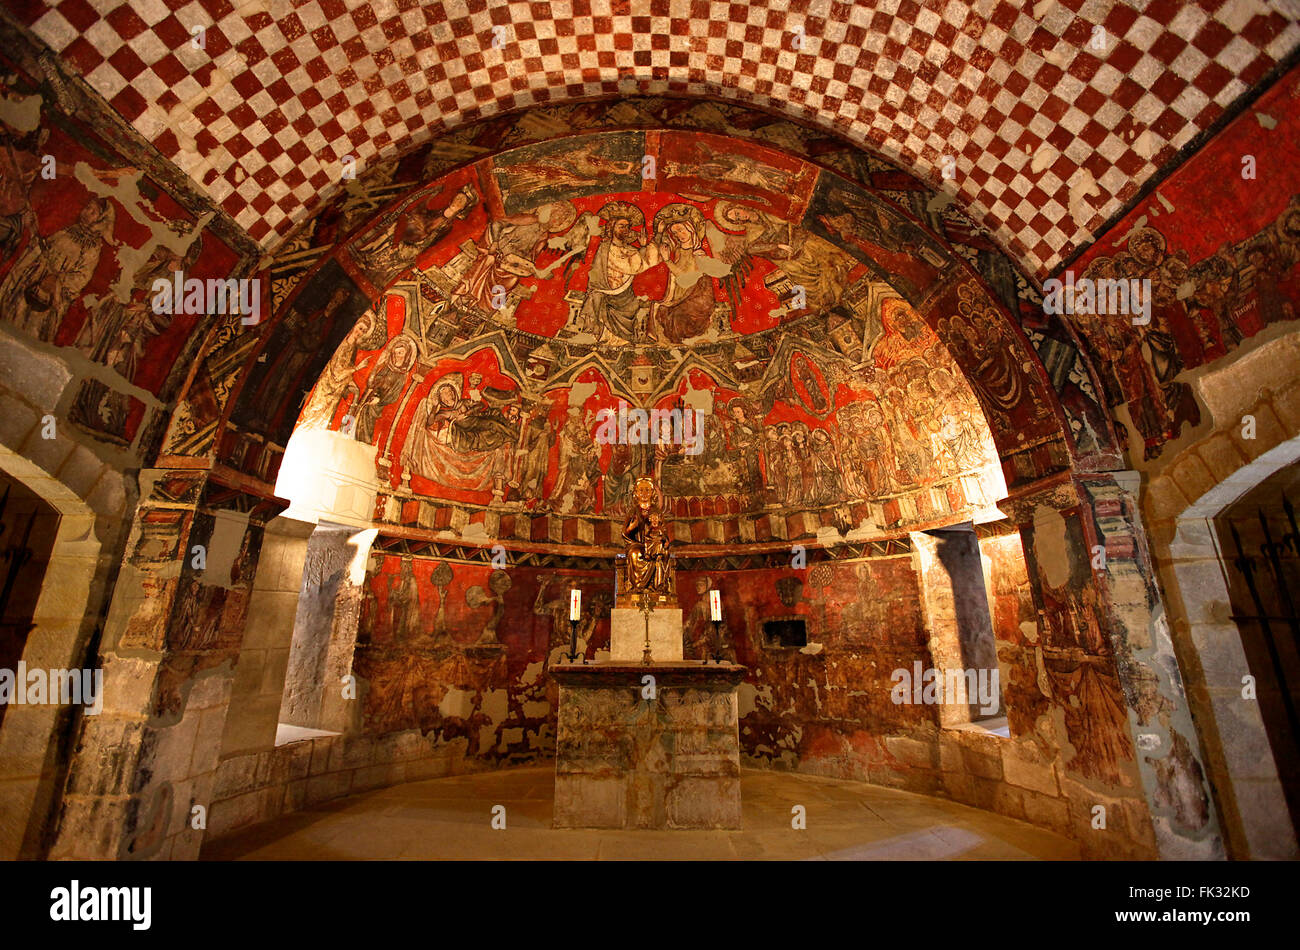 Romanesque crypt-church. Sos del Rey Católico. Zaragoza. Spain Stock Photo